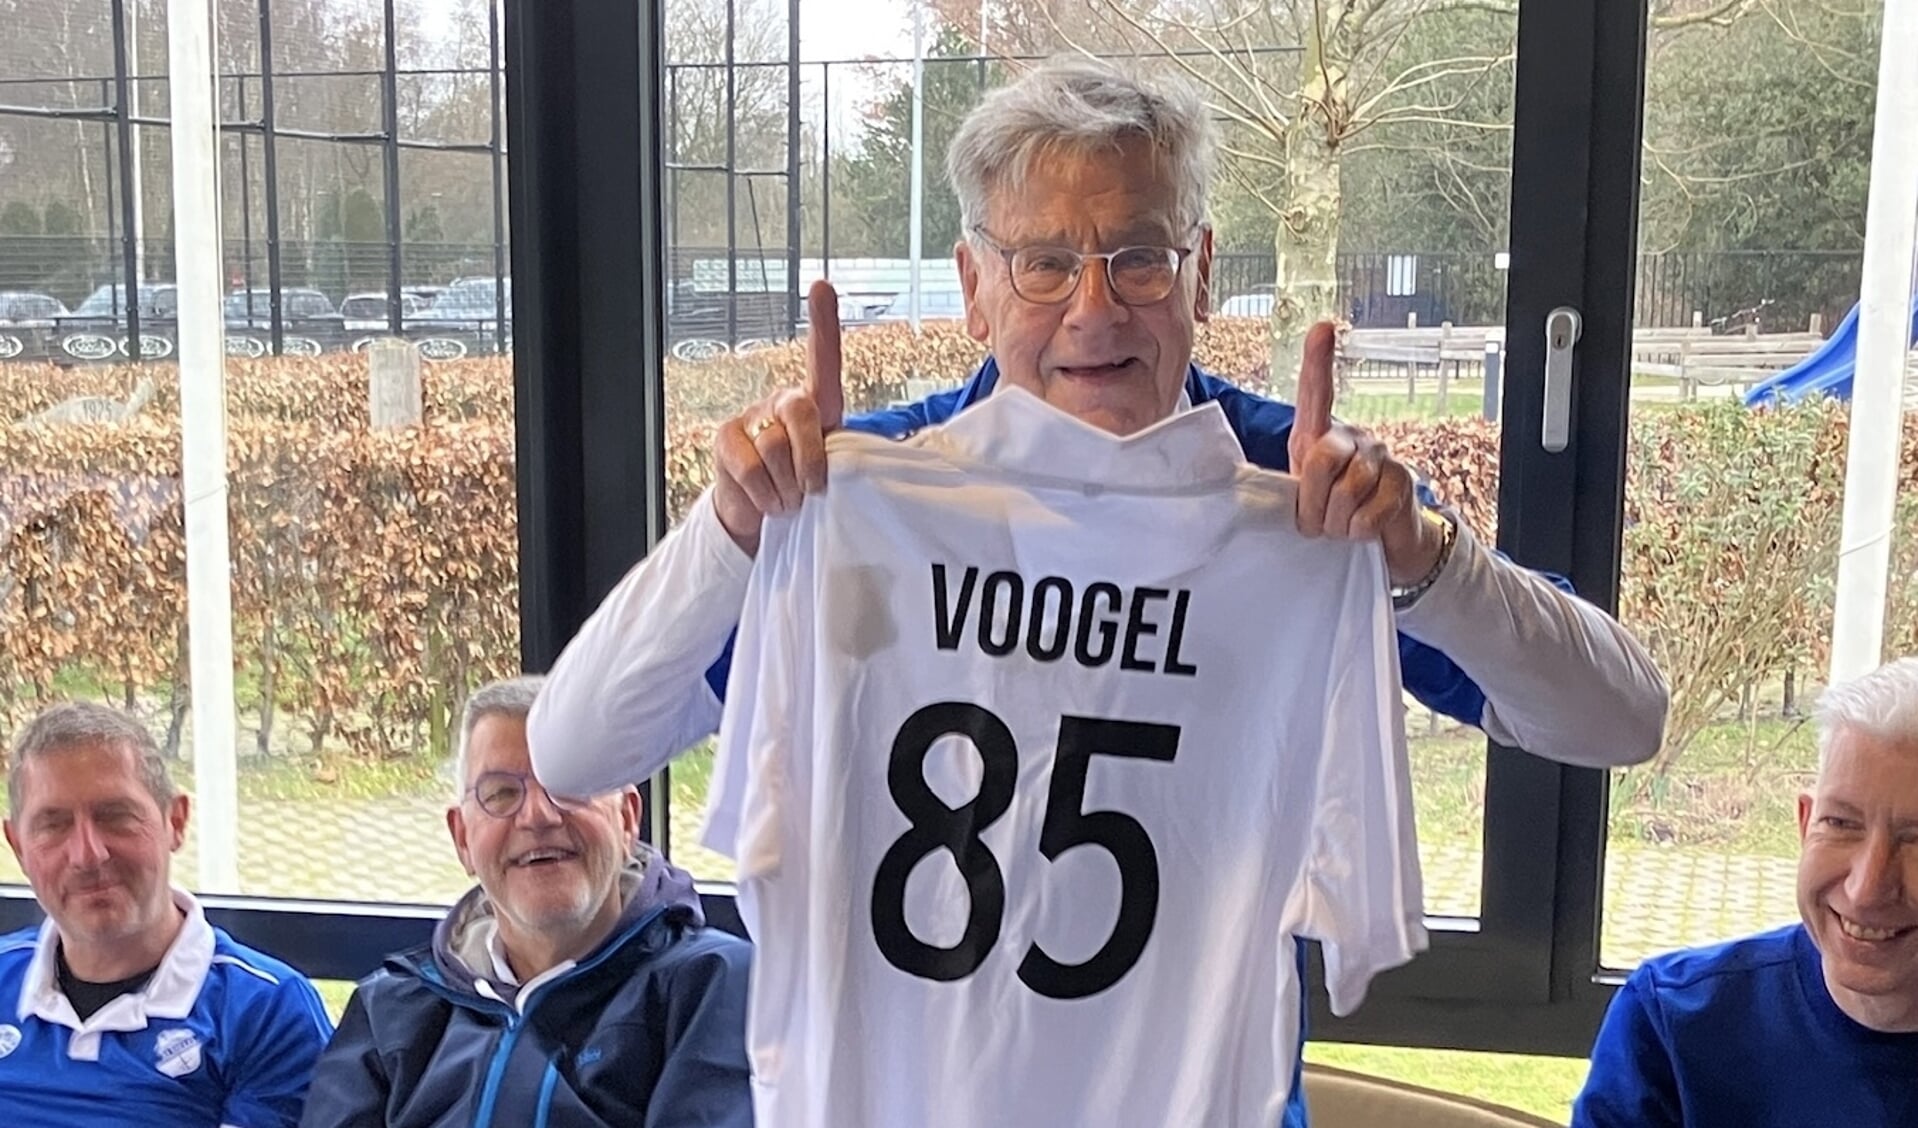 Wim Voogel heeft een mooi shirt gekregen van zijn medespelers. (Foto: MHC Almelo)